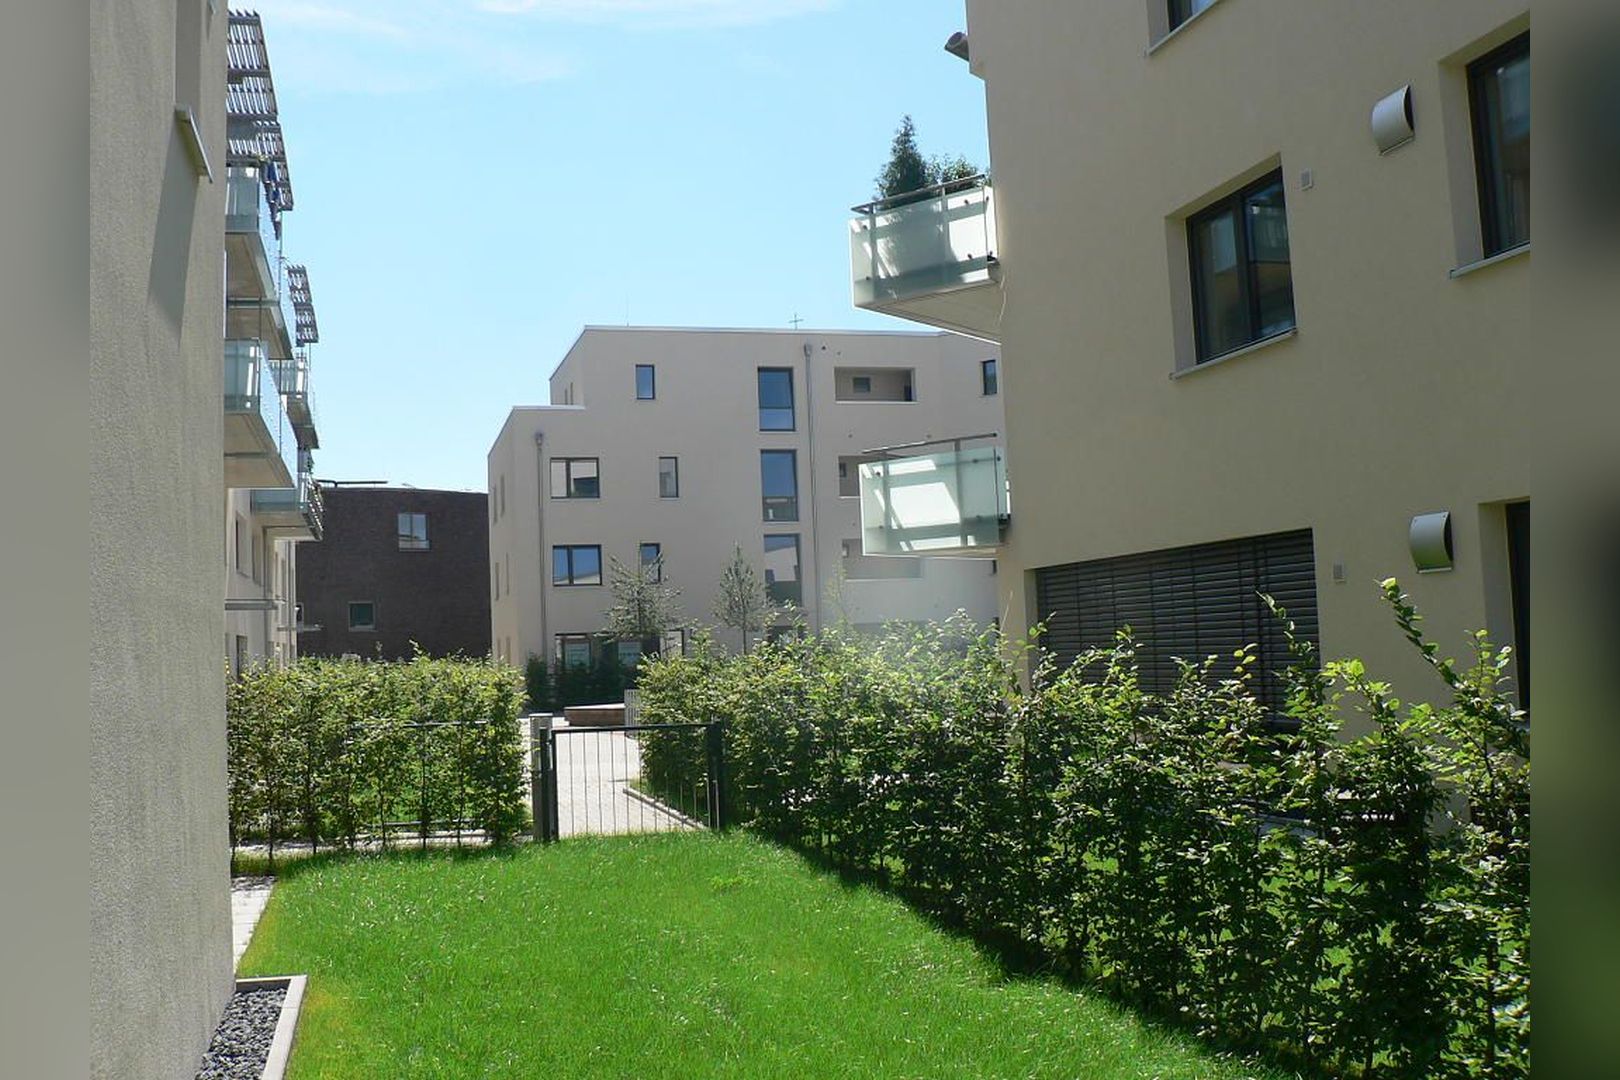 Immobilie Nr.Hilden 005 - 2-Raum-Maisonette-Wohnung mit Terrasse & Gärtchen - Bild 3.jpg